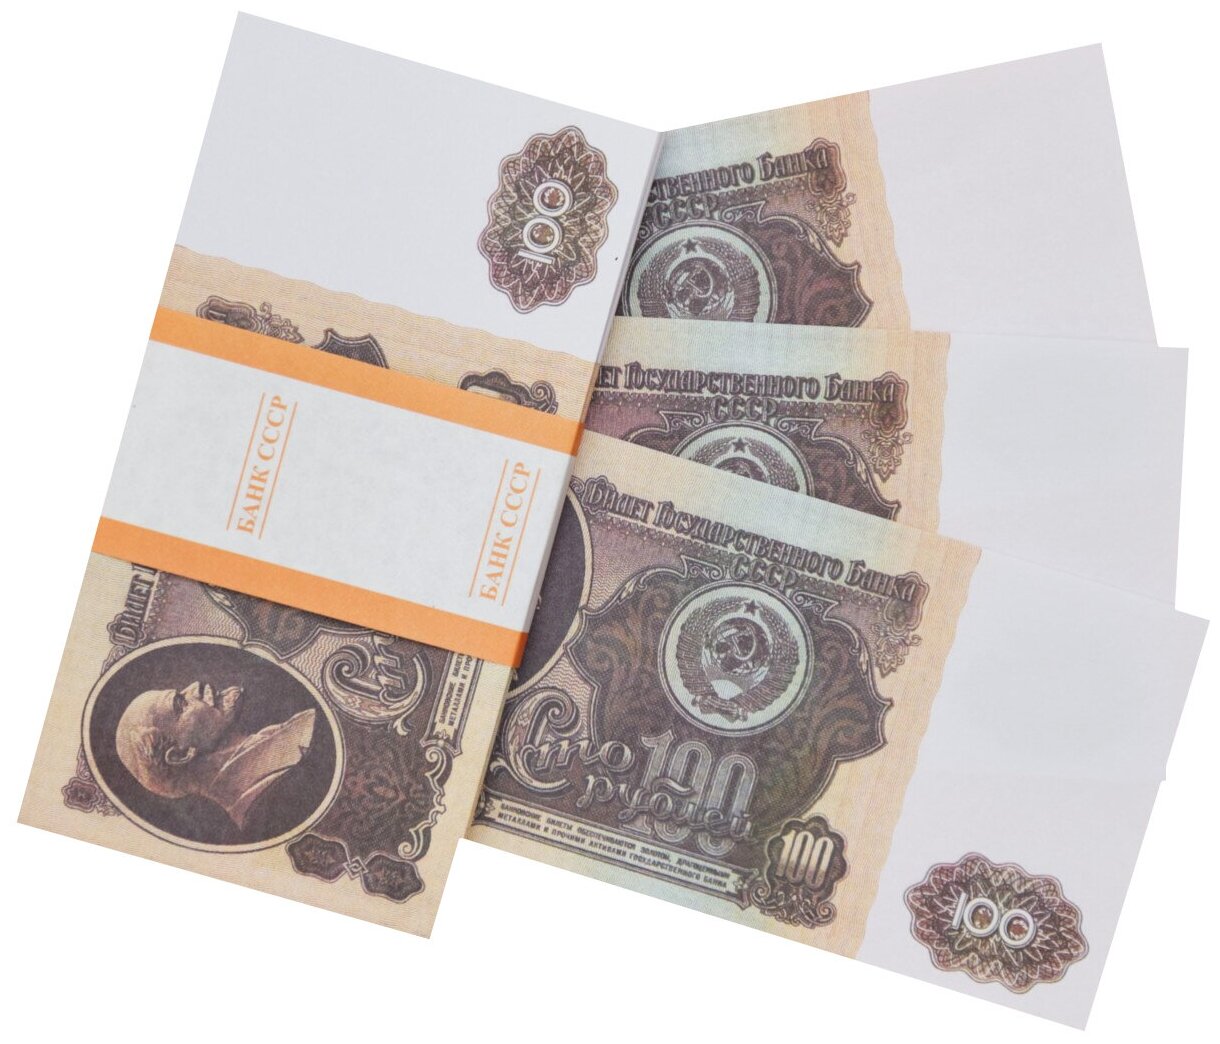 Забавная пачка денег СССР 100 рублей, сувенирные деньги для розыгрышей и приколов